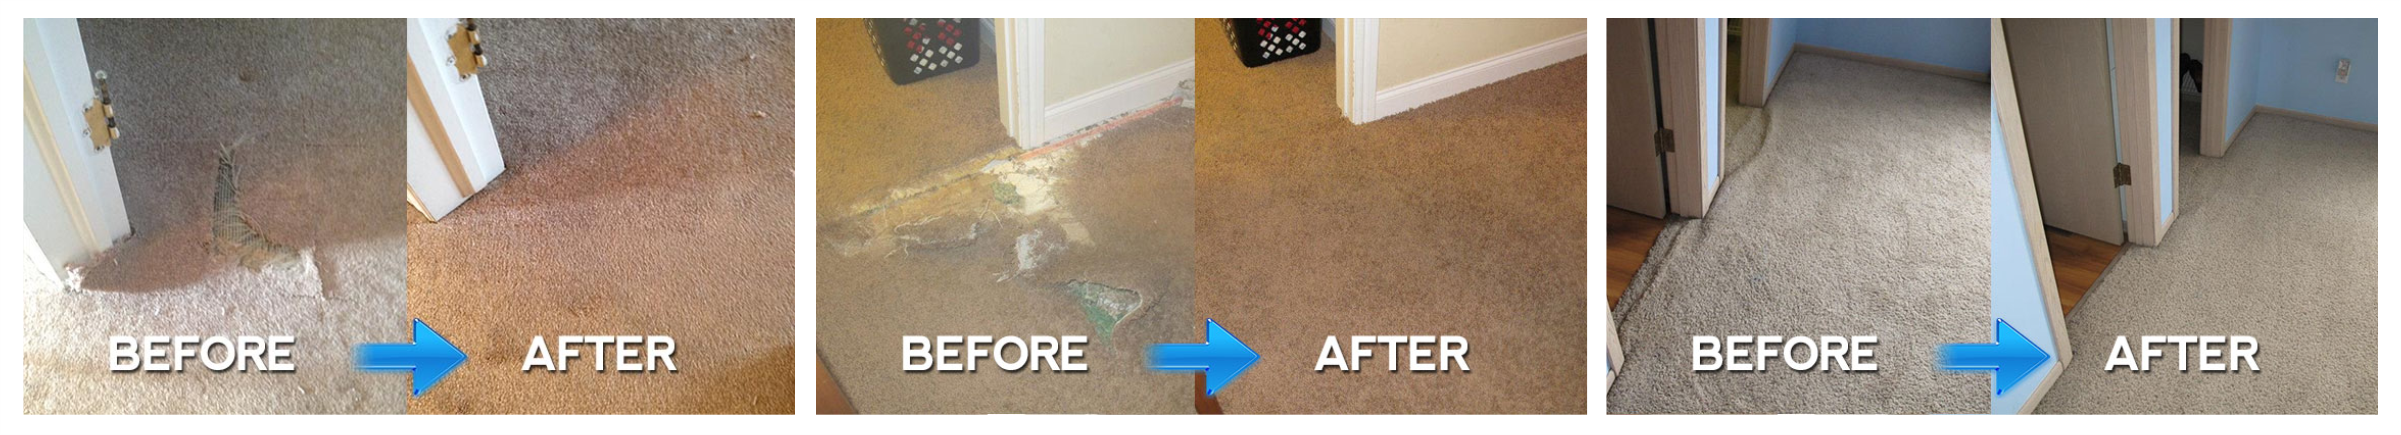 Before and after carpet repair magic